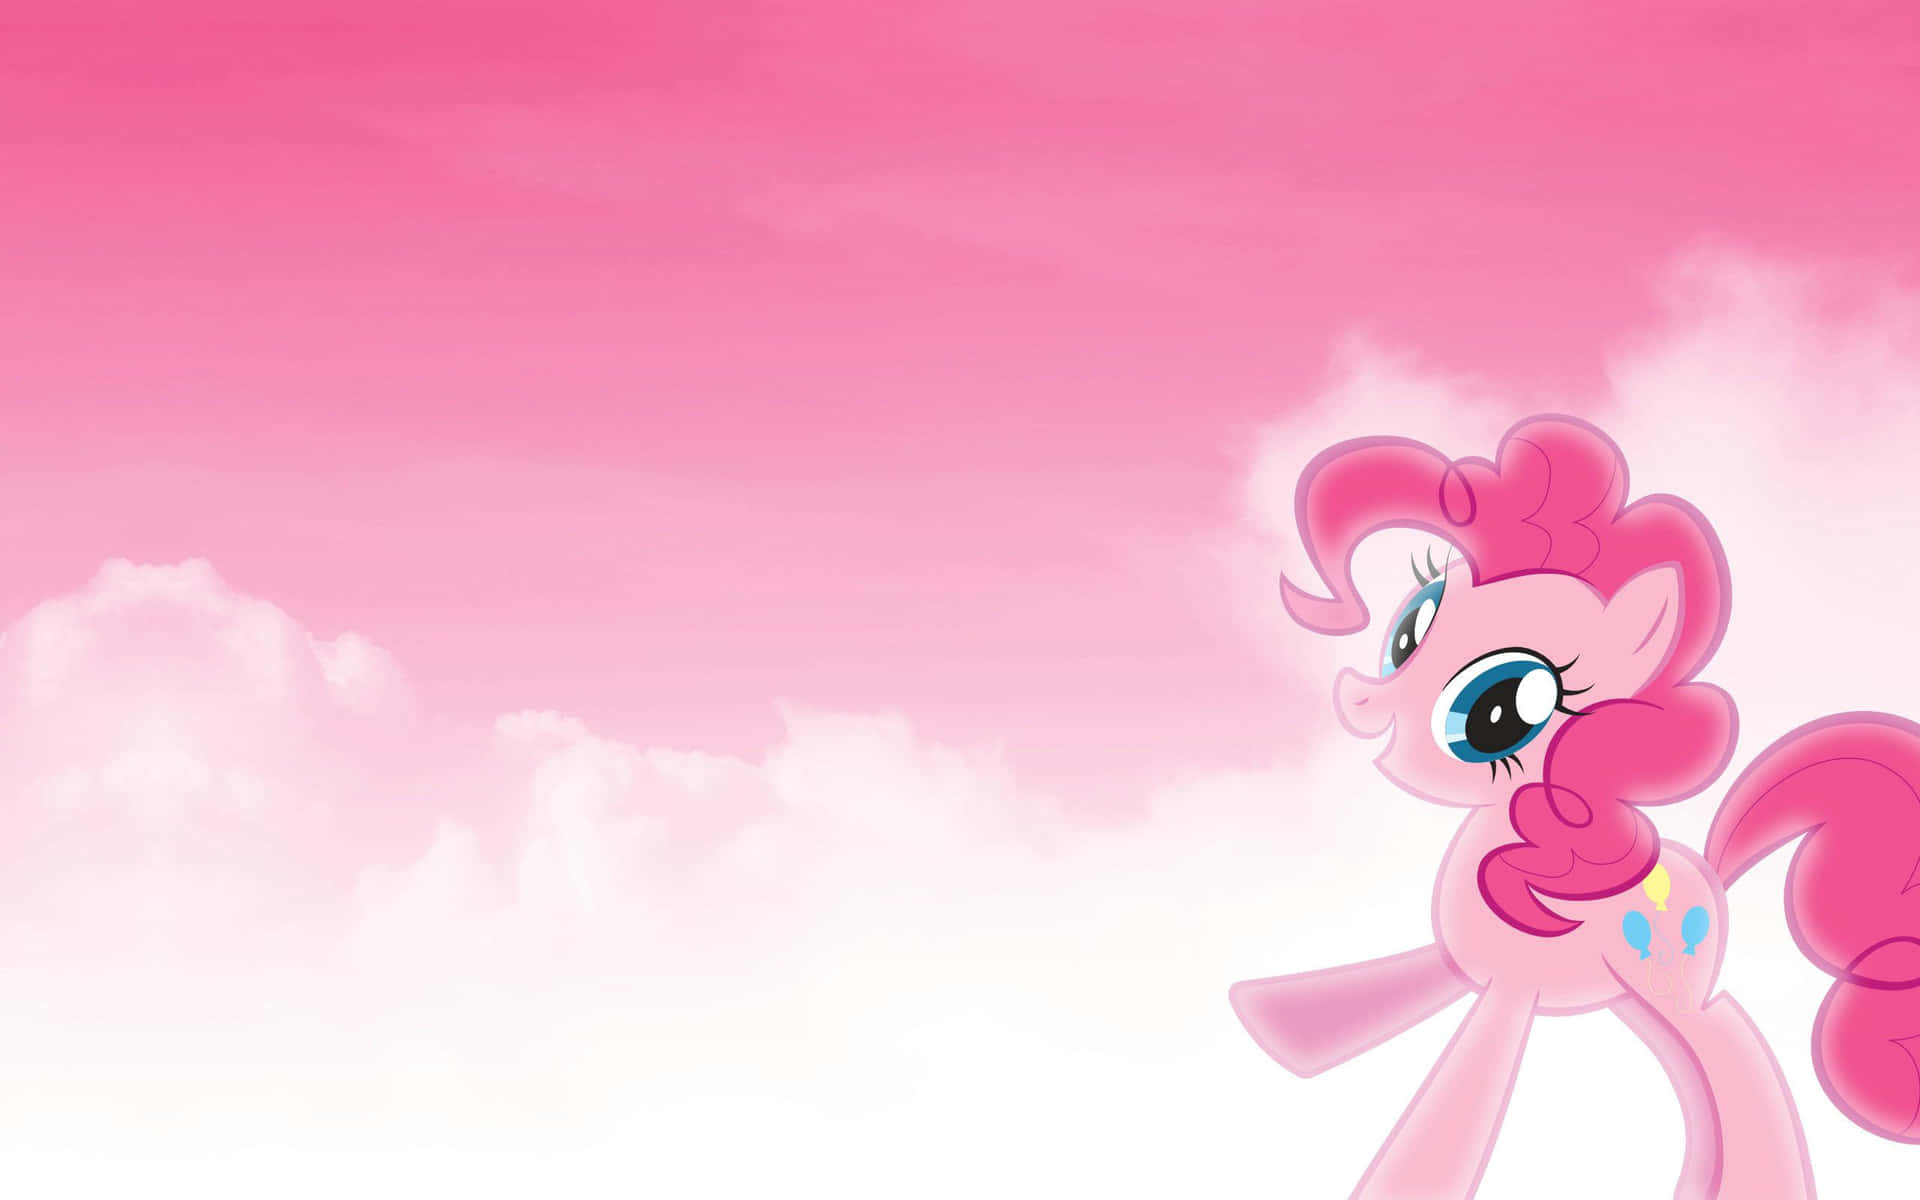 Papel De Parede Para Computador Em Estilo Pastel Rosa Com A Temática De My Little Pony. Papel de Parede